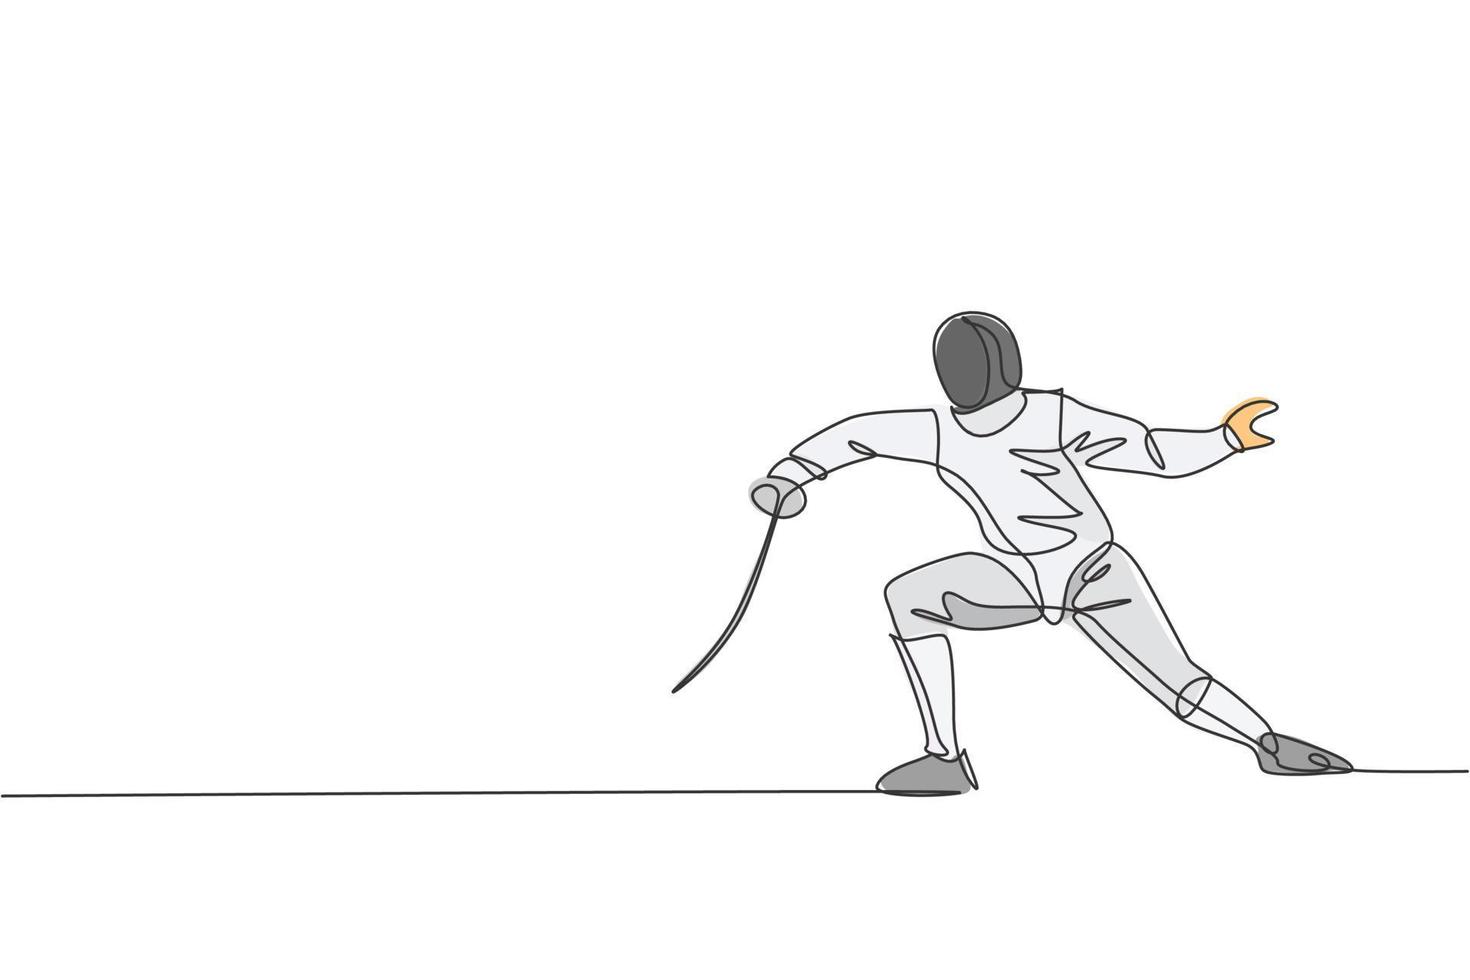 un seul dessin au trait d'athlète escrimeur jeune homme en costume d'escrime exerçant le mouvement sur l'illustration vectorielle de l'arène sportive. concept de sport combatif et de combat. conception moderne de dessin en ligne continue vecteur